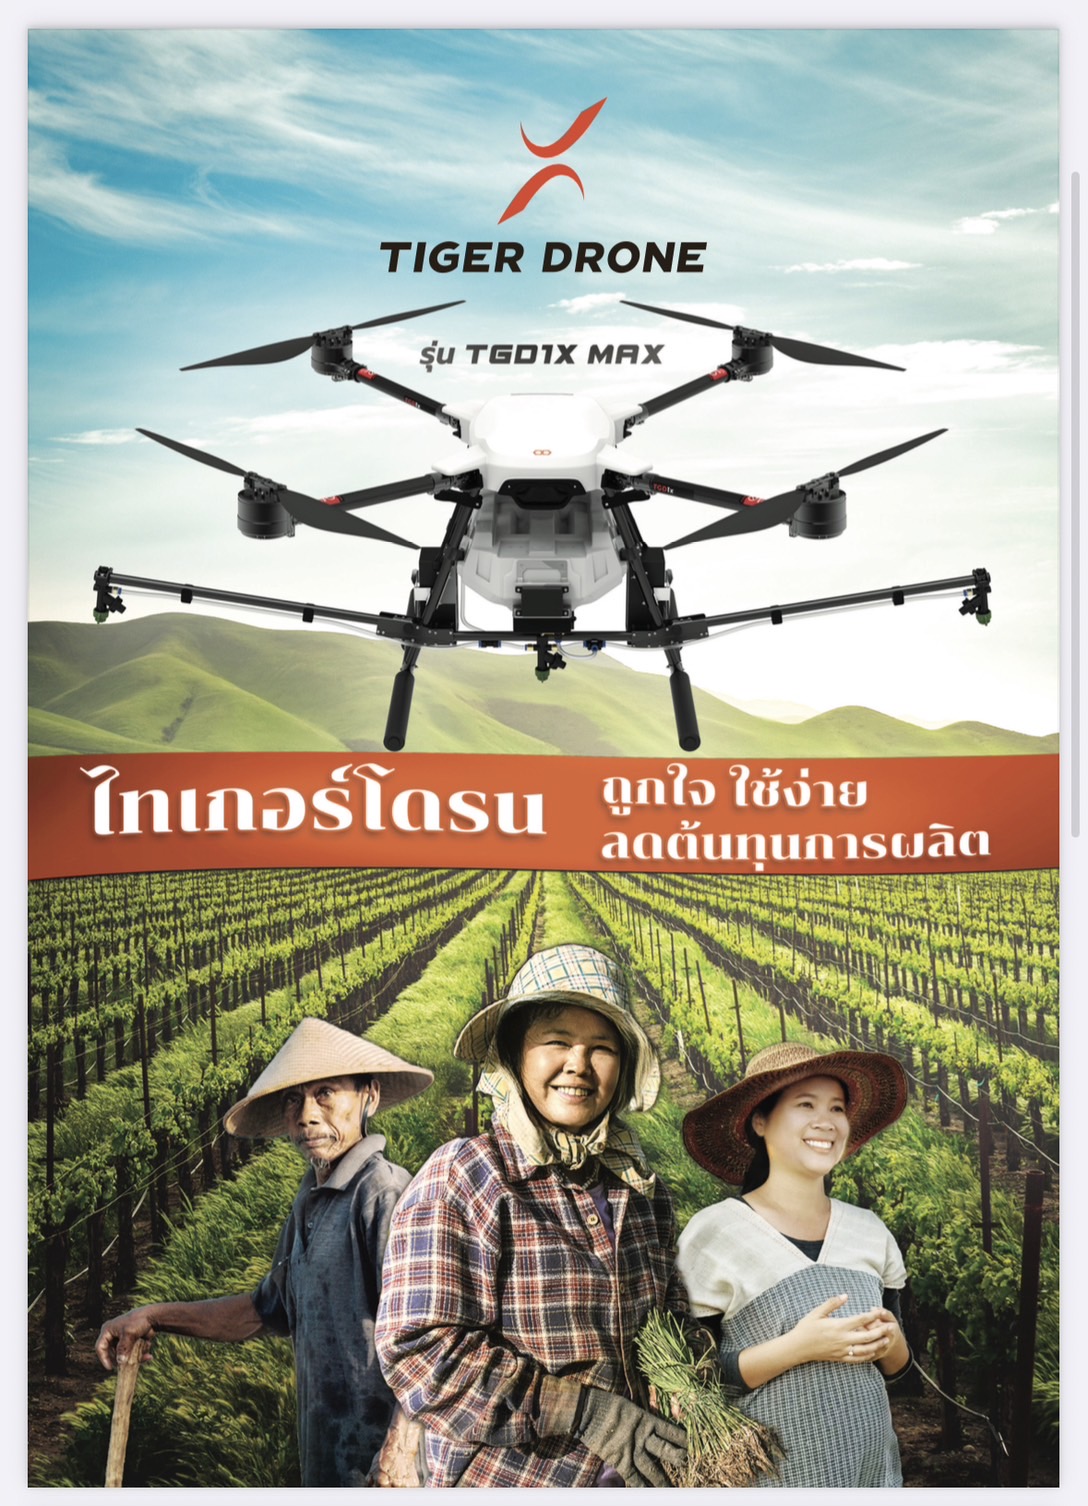 | HiveGround | ทรู ดิจิทัล เสริมแกร่งสตาร์ทอัพไทย ลงทุนธุรกิจนวัตกรรมส่ง “ไทเกอร์โดรน” เจาะกลุ่มเกษตรกรไทย